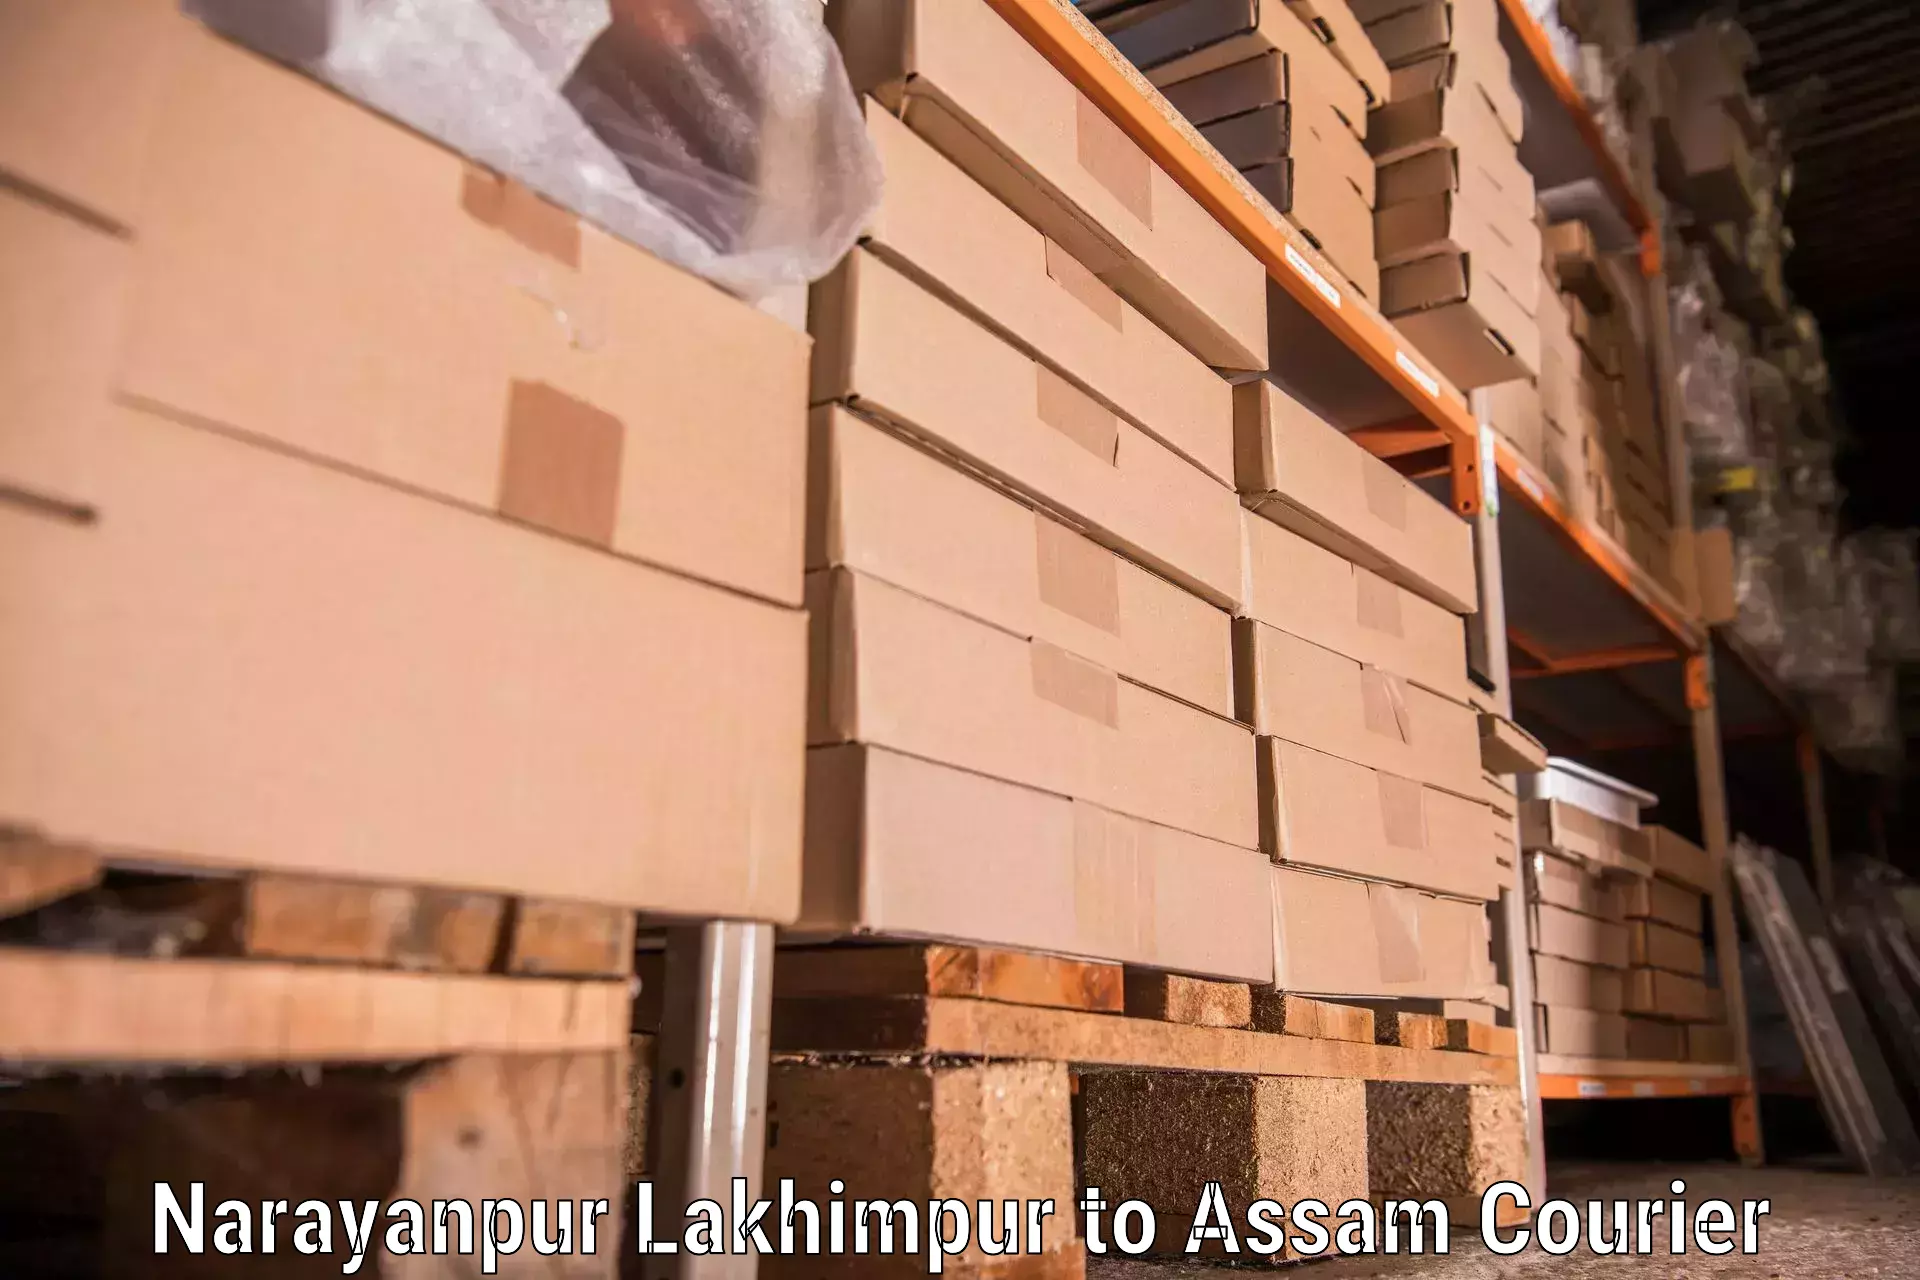 Furniture moving experts in Narayanpur Lakhimpur to Gauhati University Guwahati